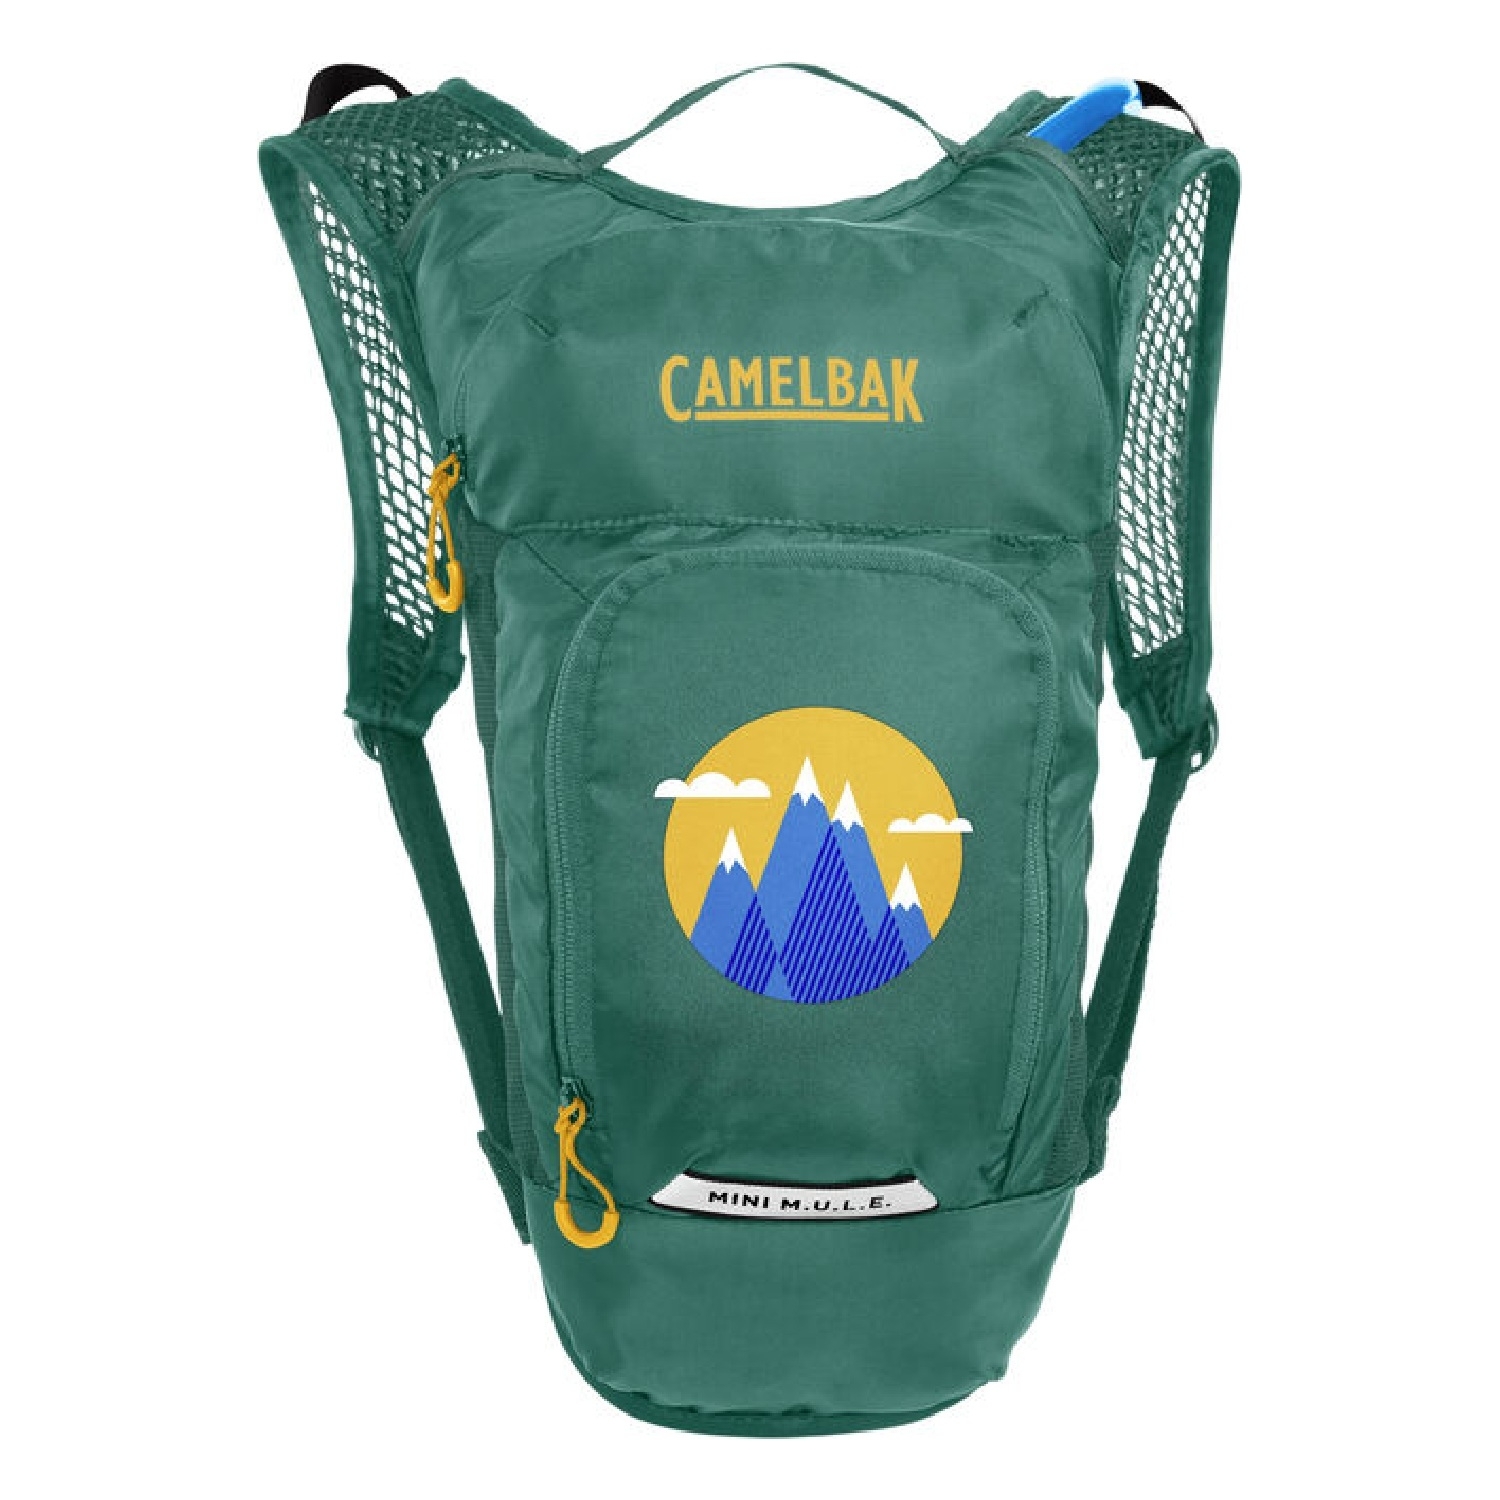 Zdjęcia - Plecak CamelBak  dla dziecka z bukłakiem  Mini M.U.L.E 1.5L green/mountains 